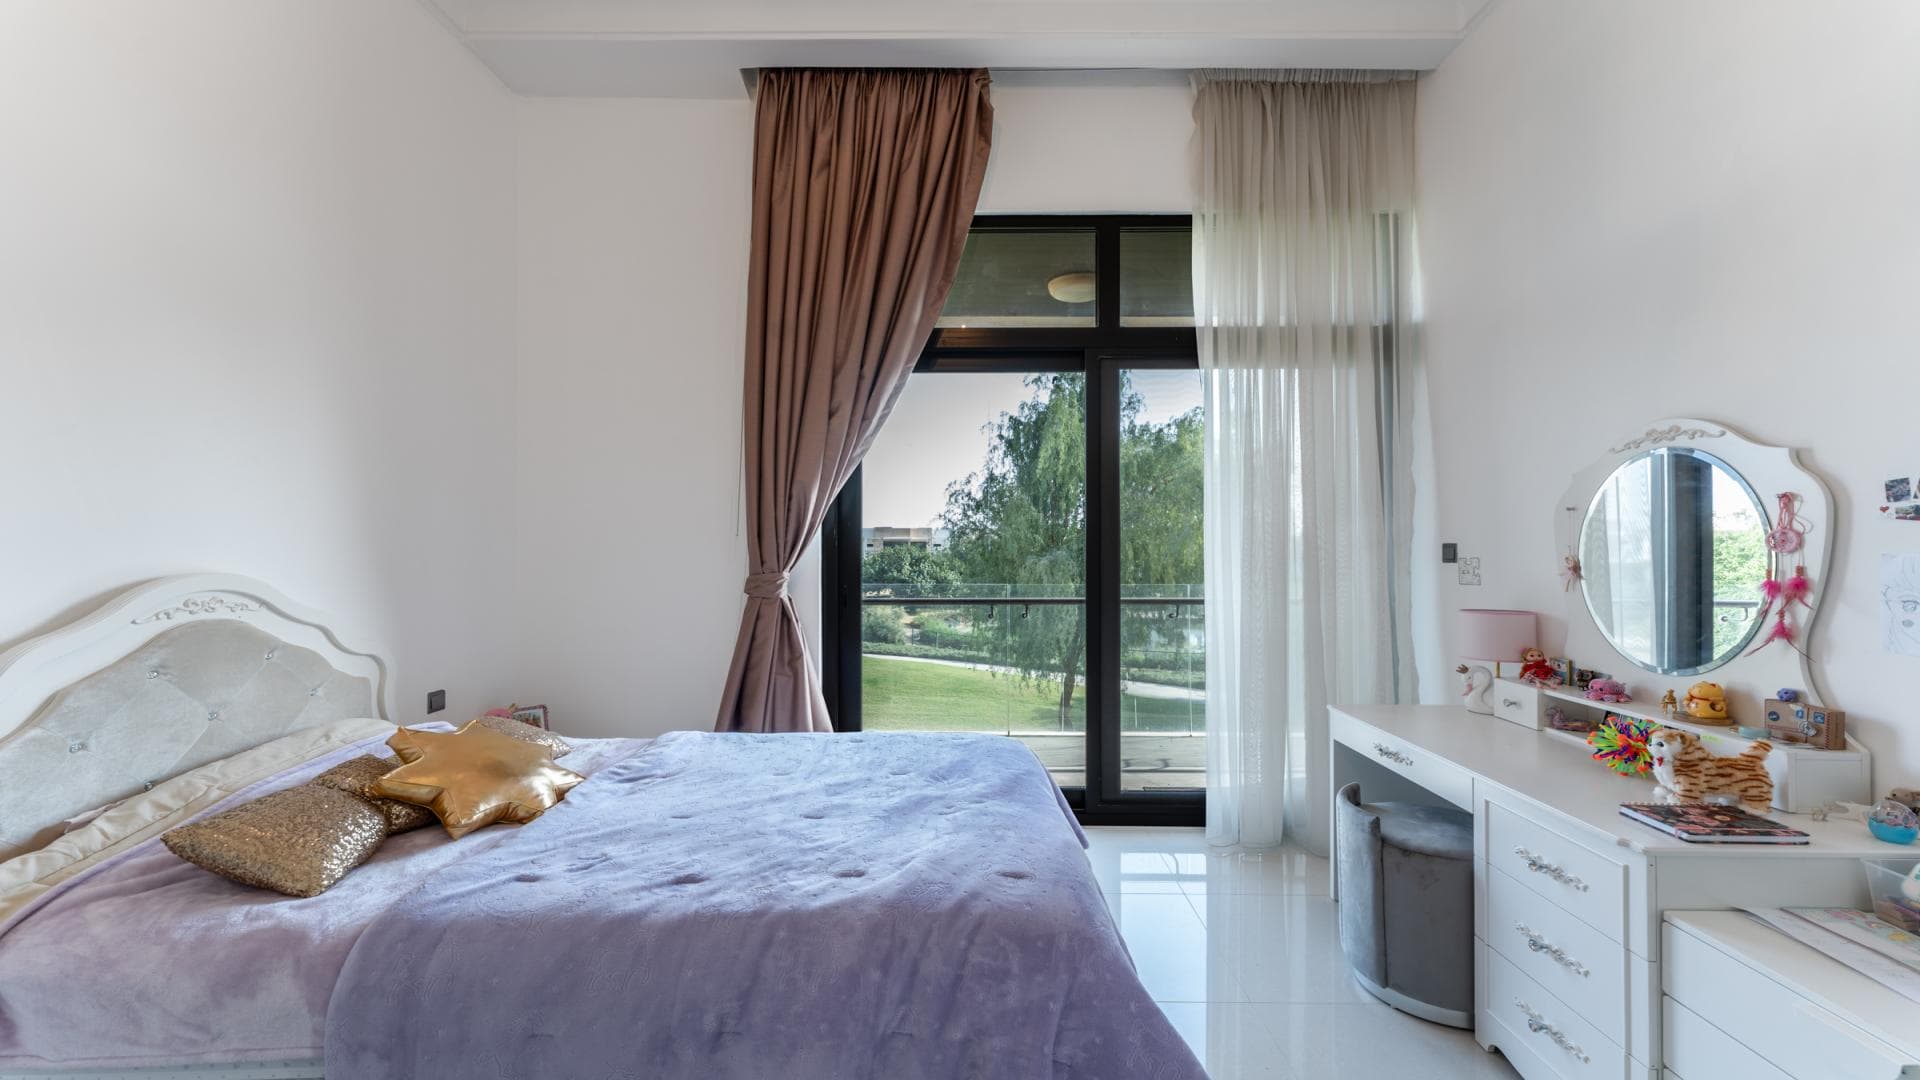 5 Bedroom Villa For Rent Rose 1 Lp38889 2ad486f07d194c00.jpg